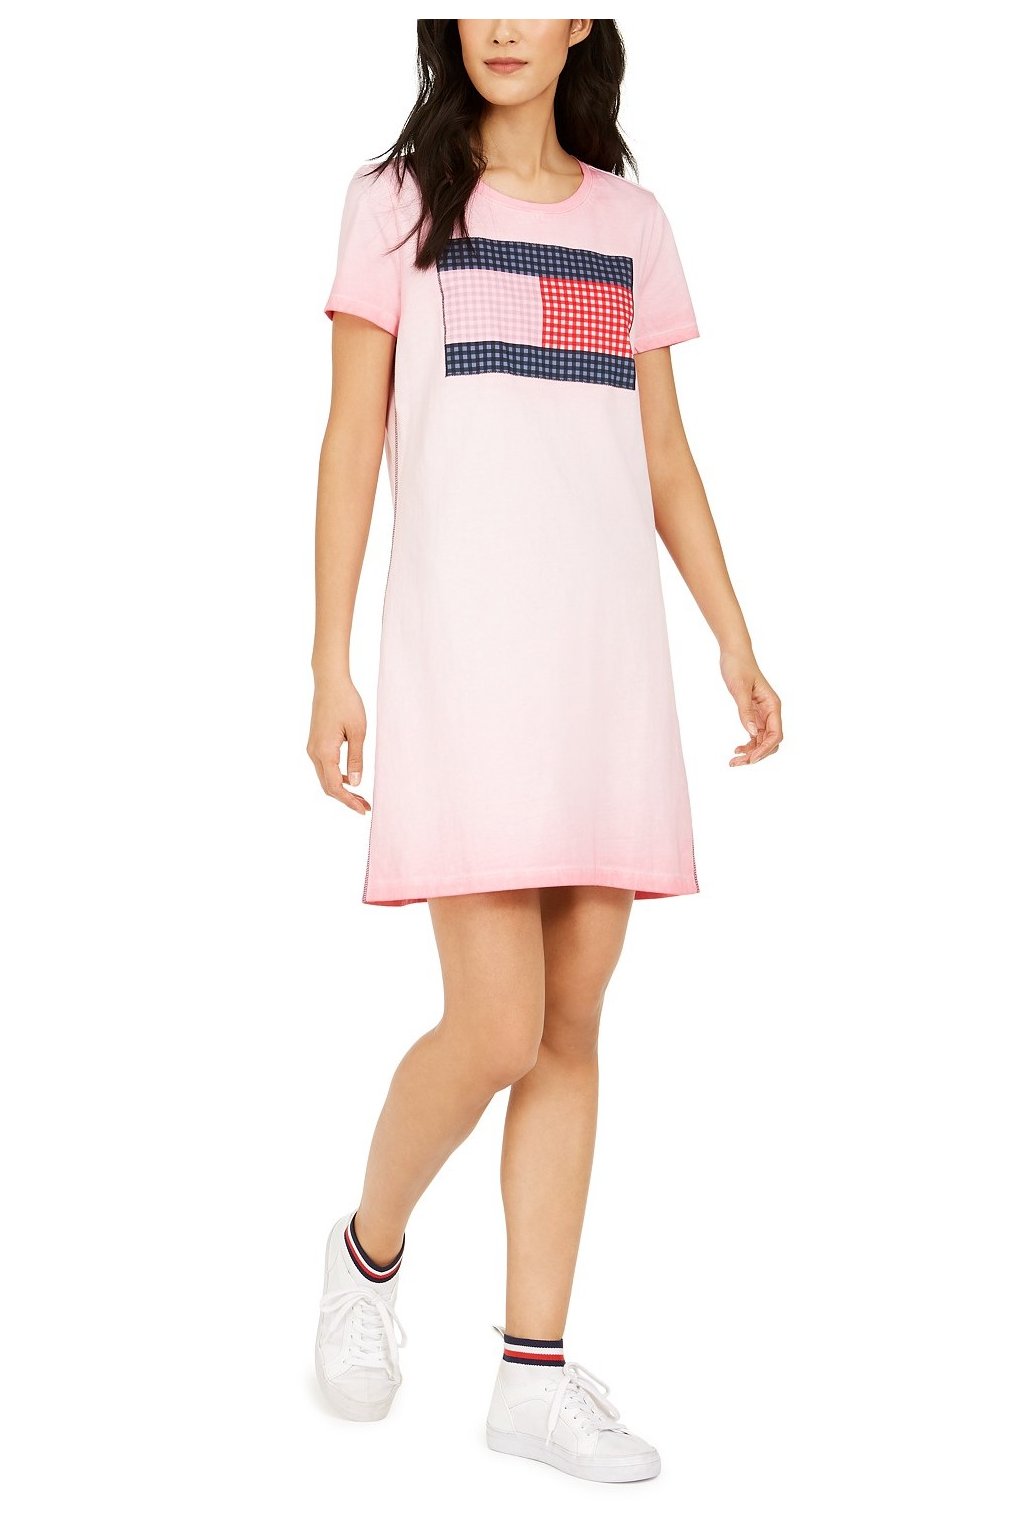 Šaty Tommy Hilfiger Cotton Flag Dress růžové - Nejleginy